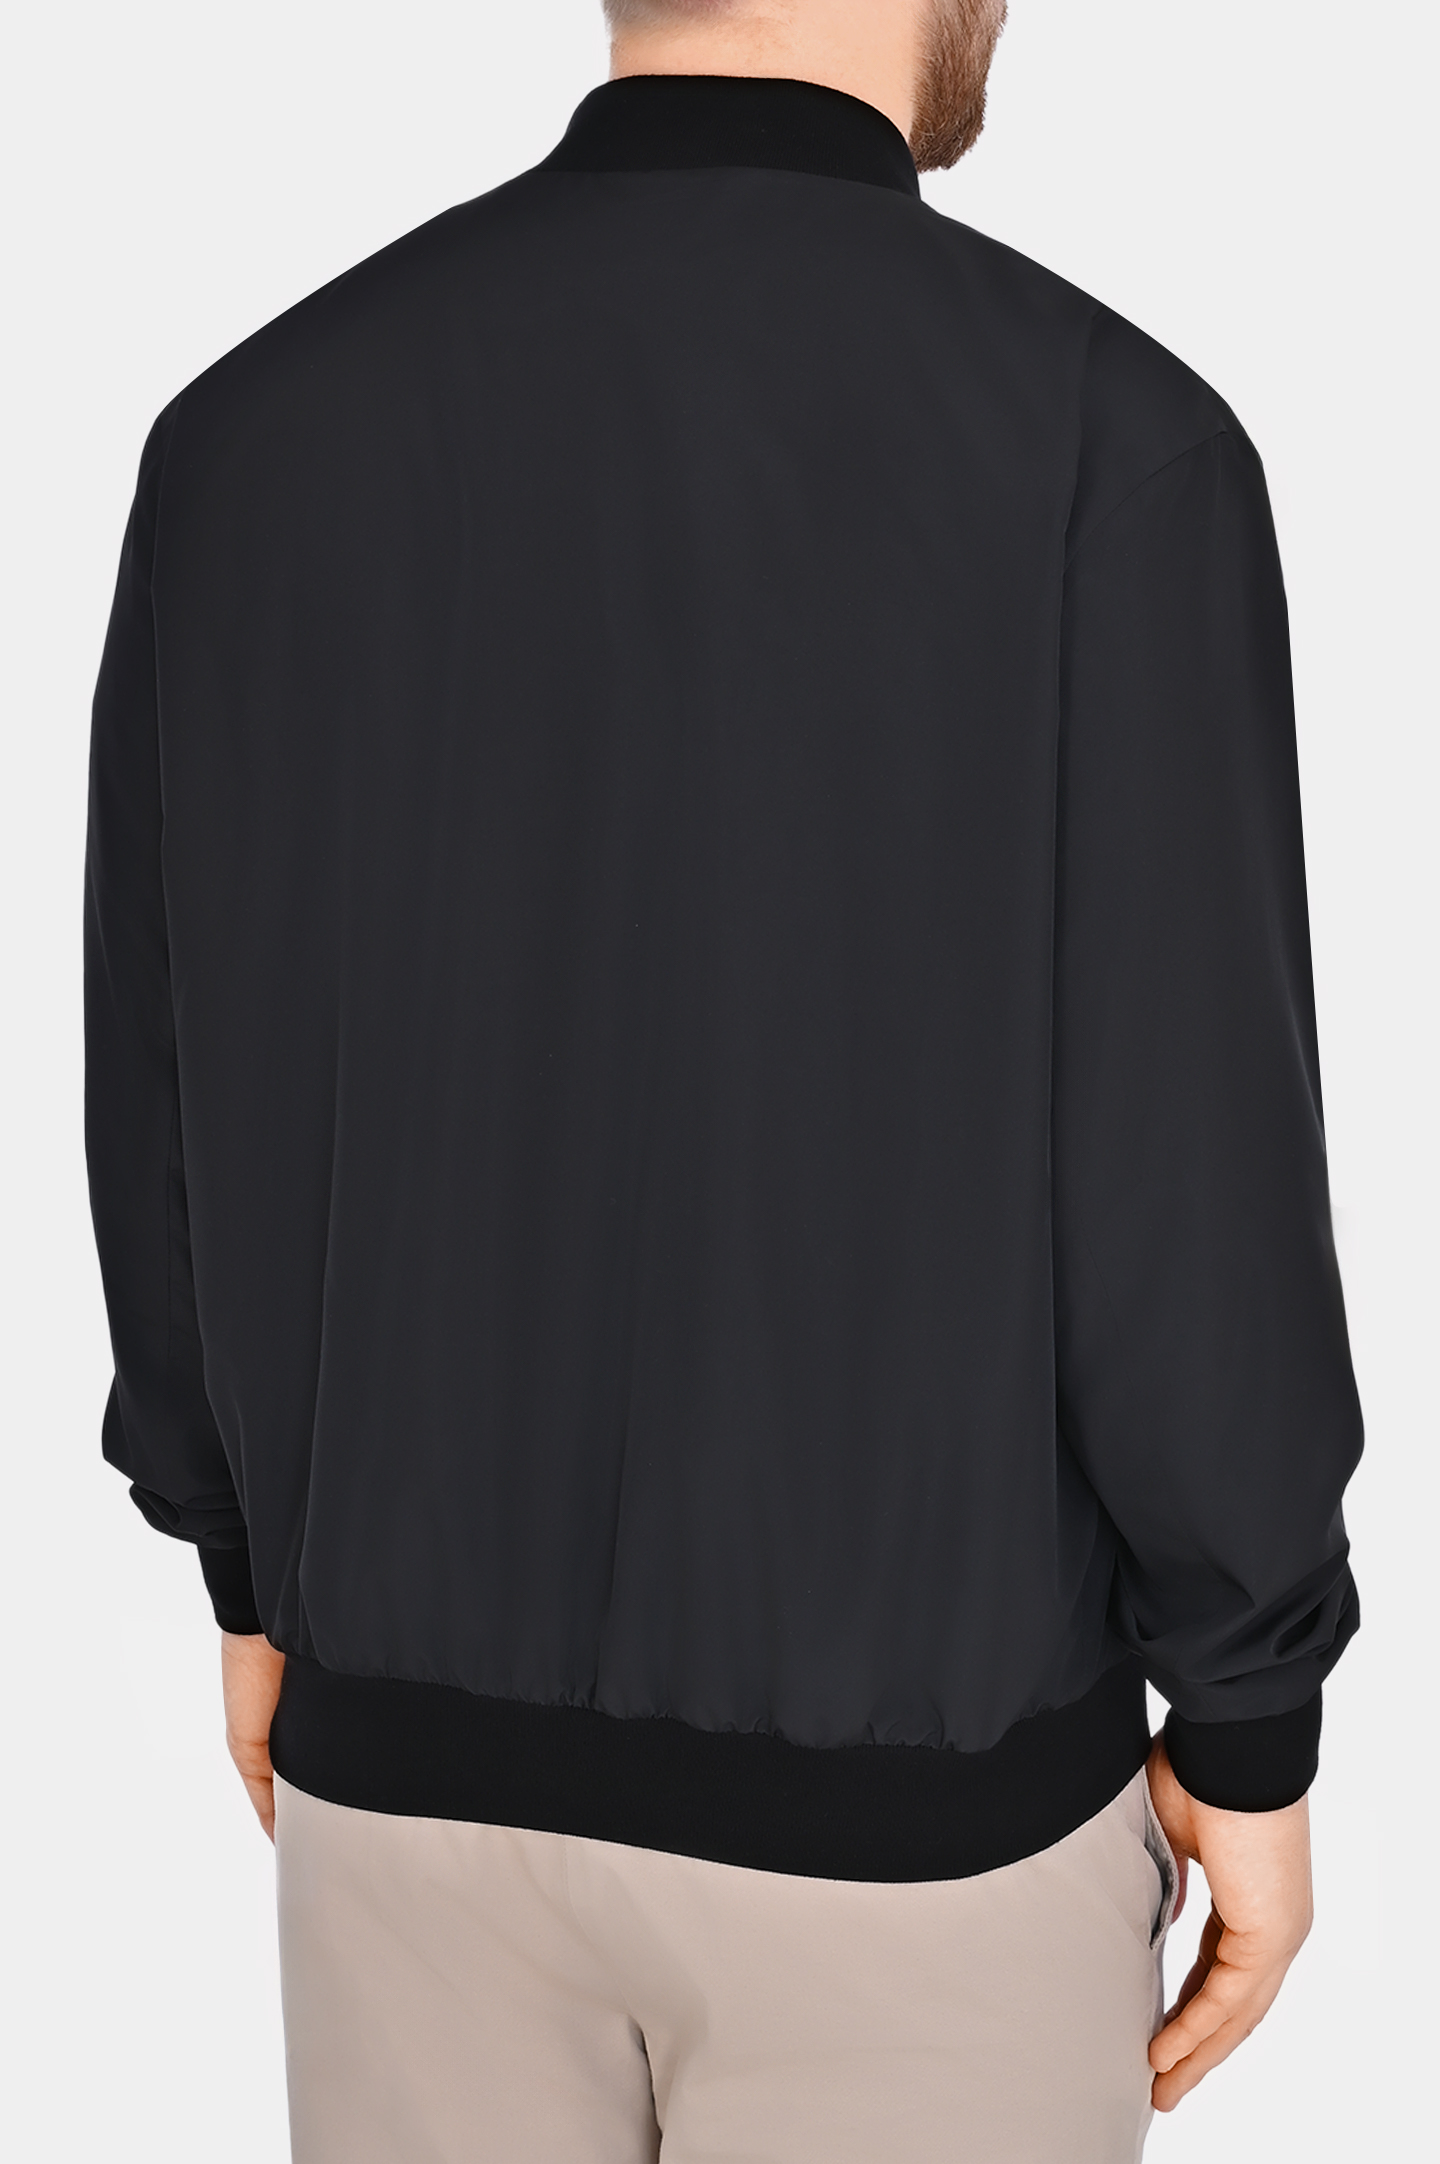 Легкая куртка из полиэстера на молнии KITON UBLMSEAK0710D1, цвет: Черный, Мужской